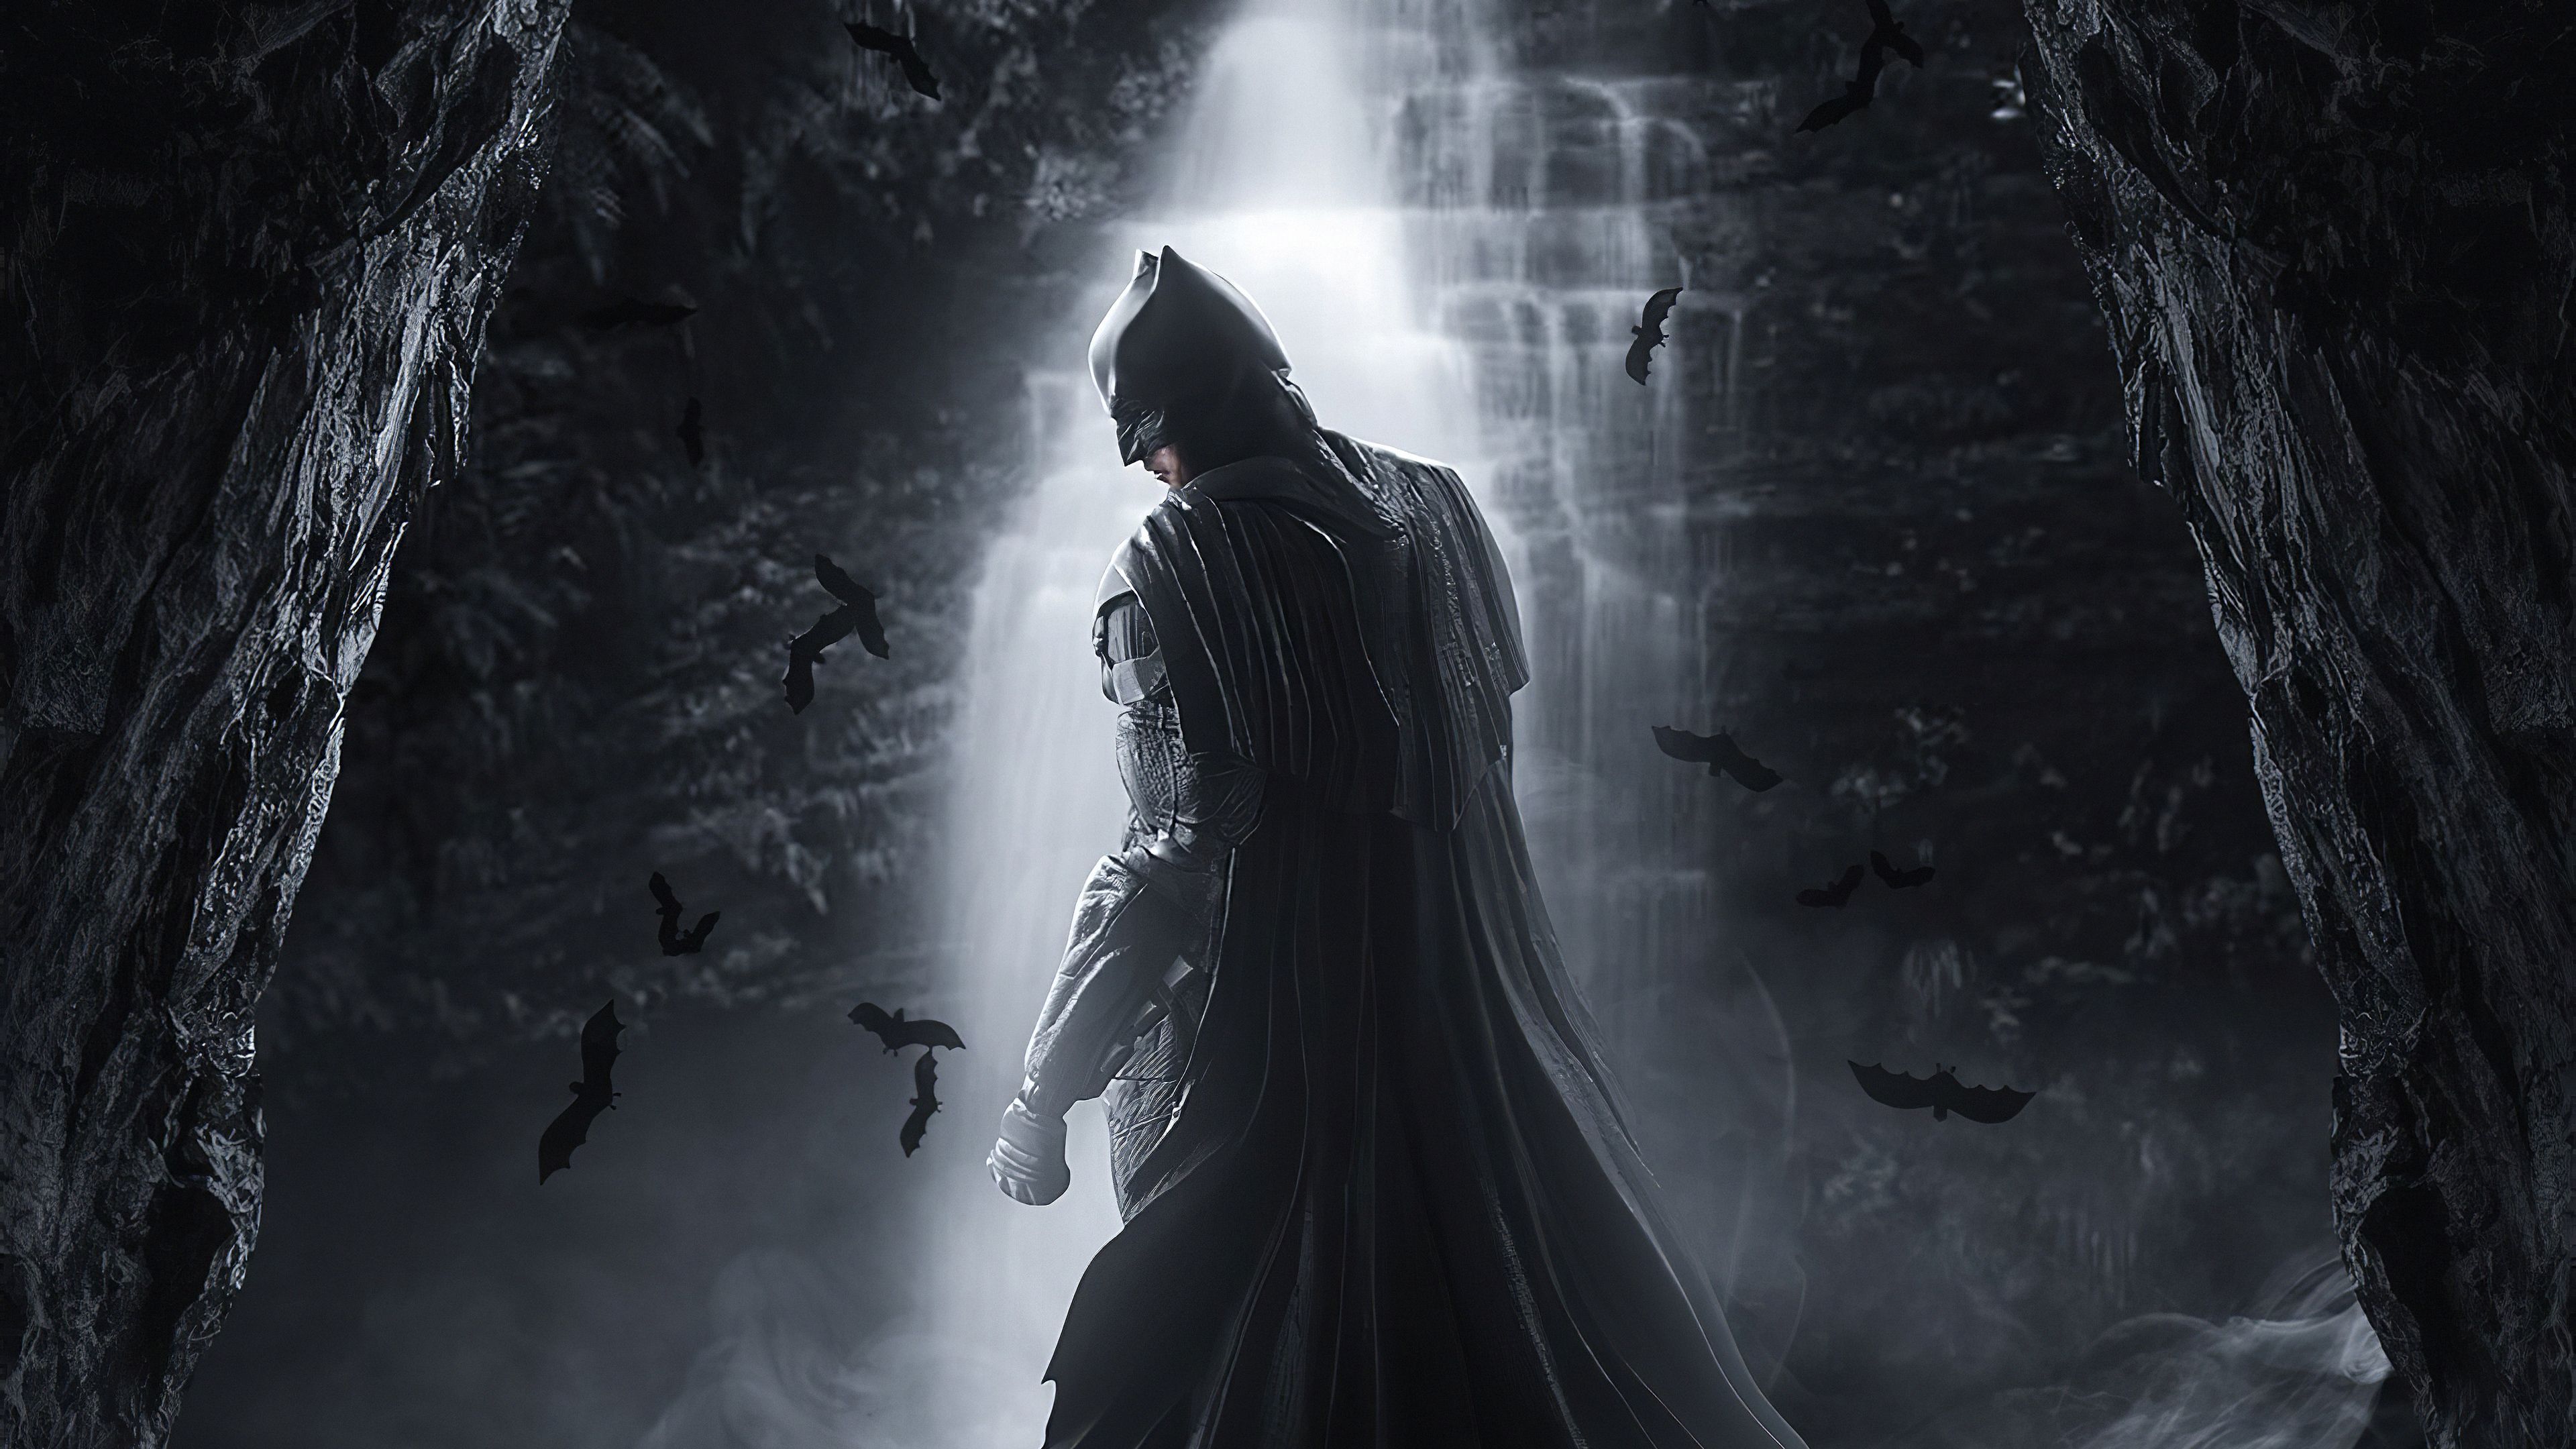 Wallpaper batman: arkham knight, batman, video game, dark, art desktop  wallpaper, hd image, picture, background, 68e7d5 | wallpapersmug